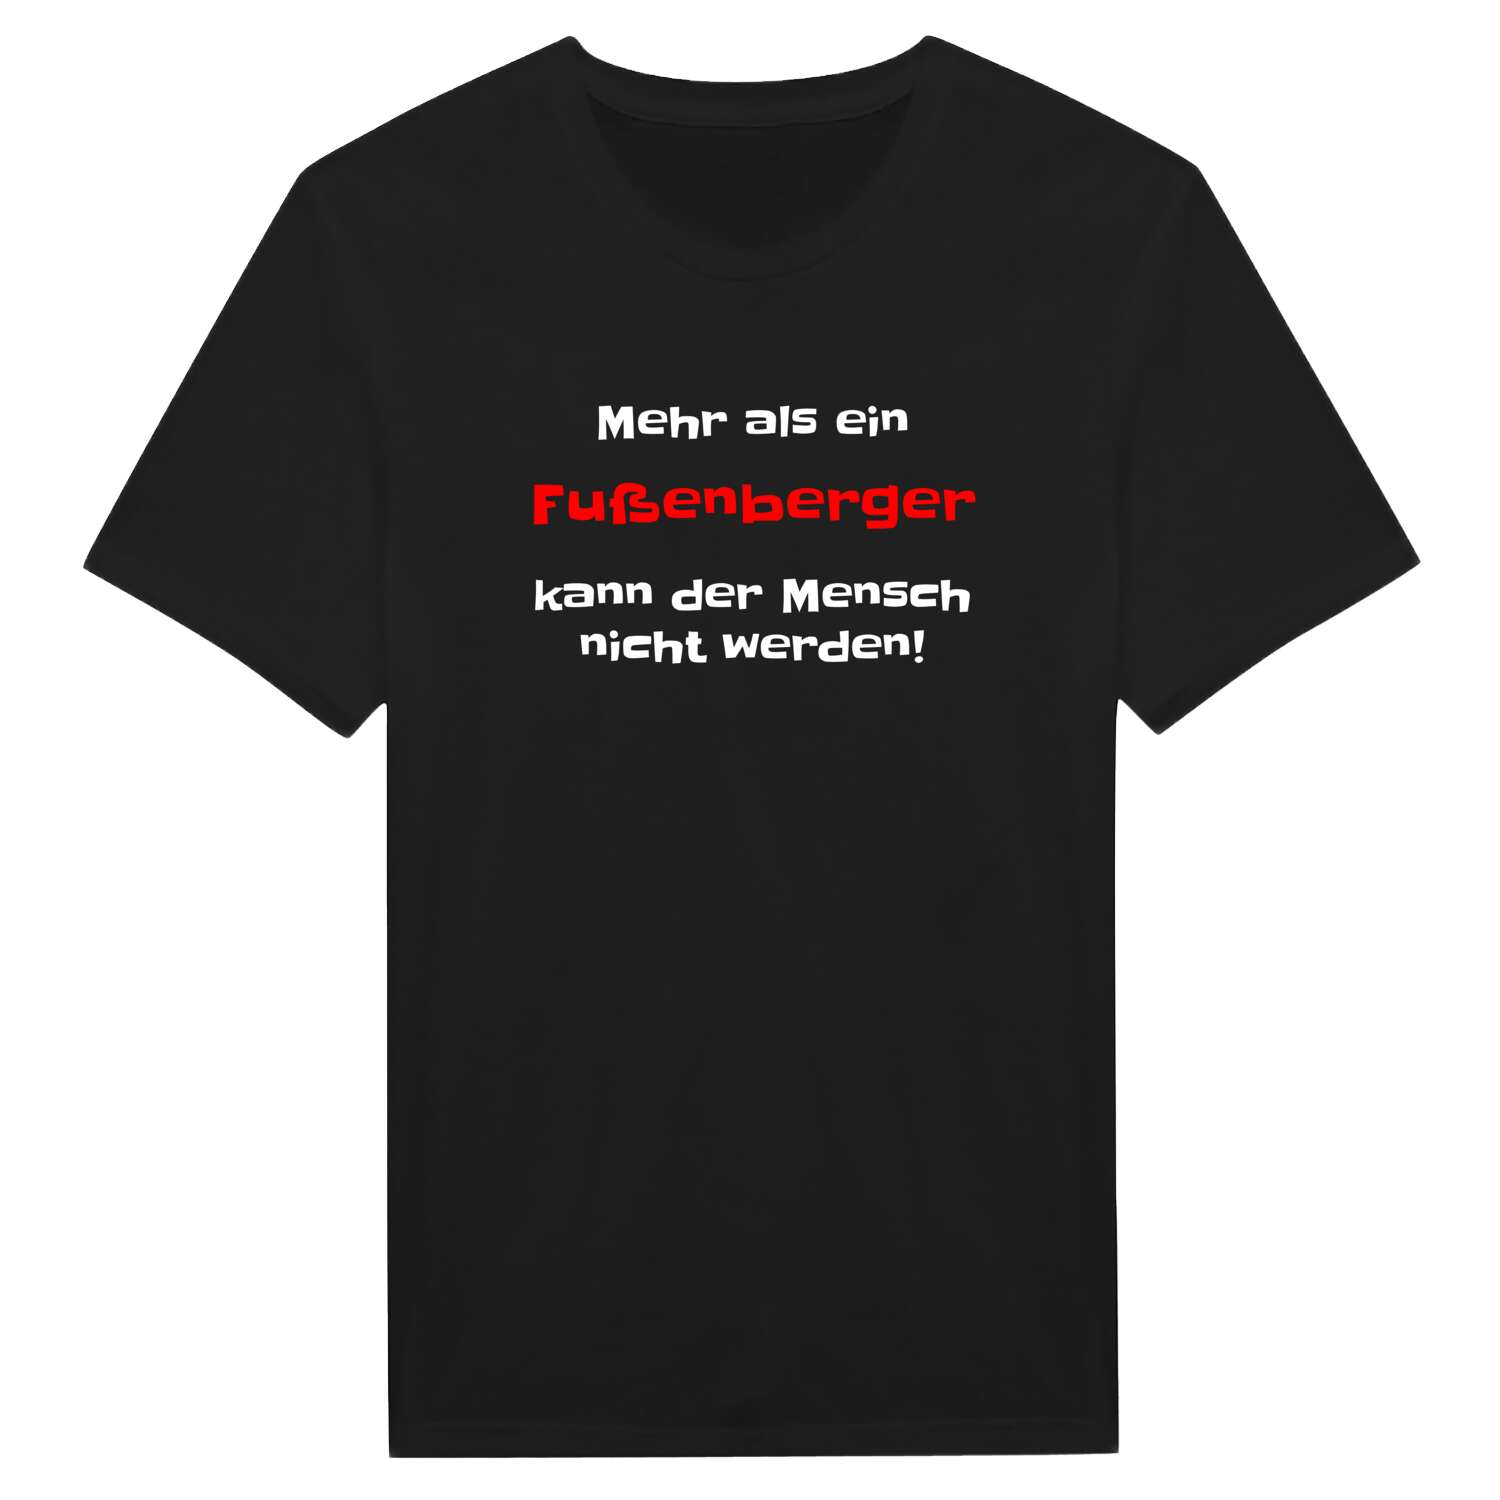 Fußenberg T-Shirt »Mehr als ein«